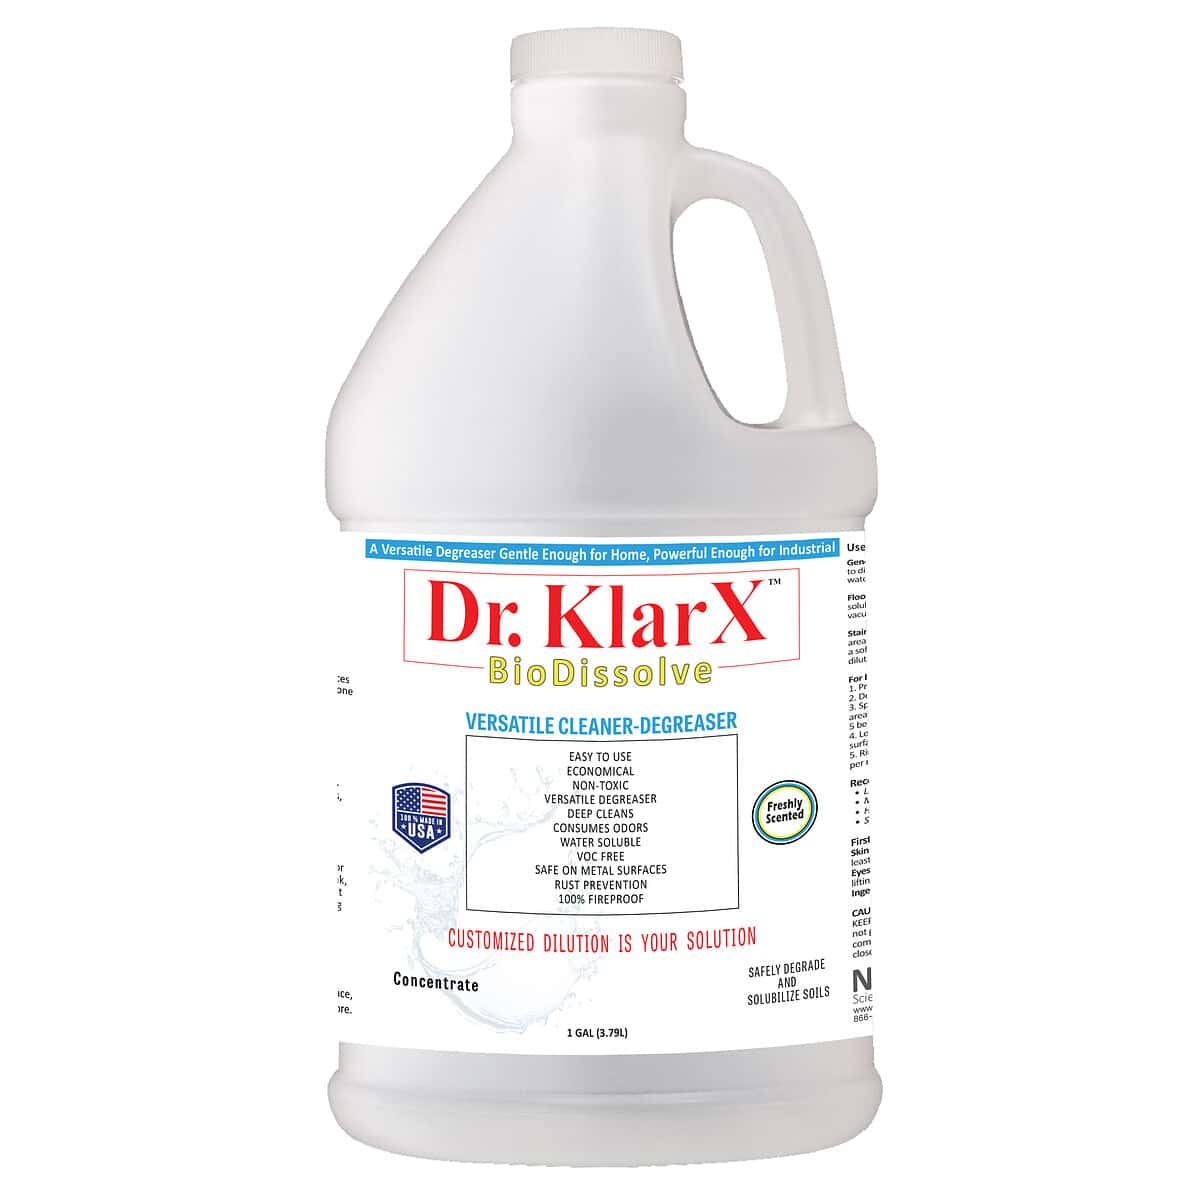 Dr. KlarX BioDissolve Versatile Cleaner and Degreaser 1-gallon bottle